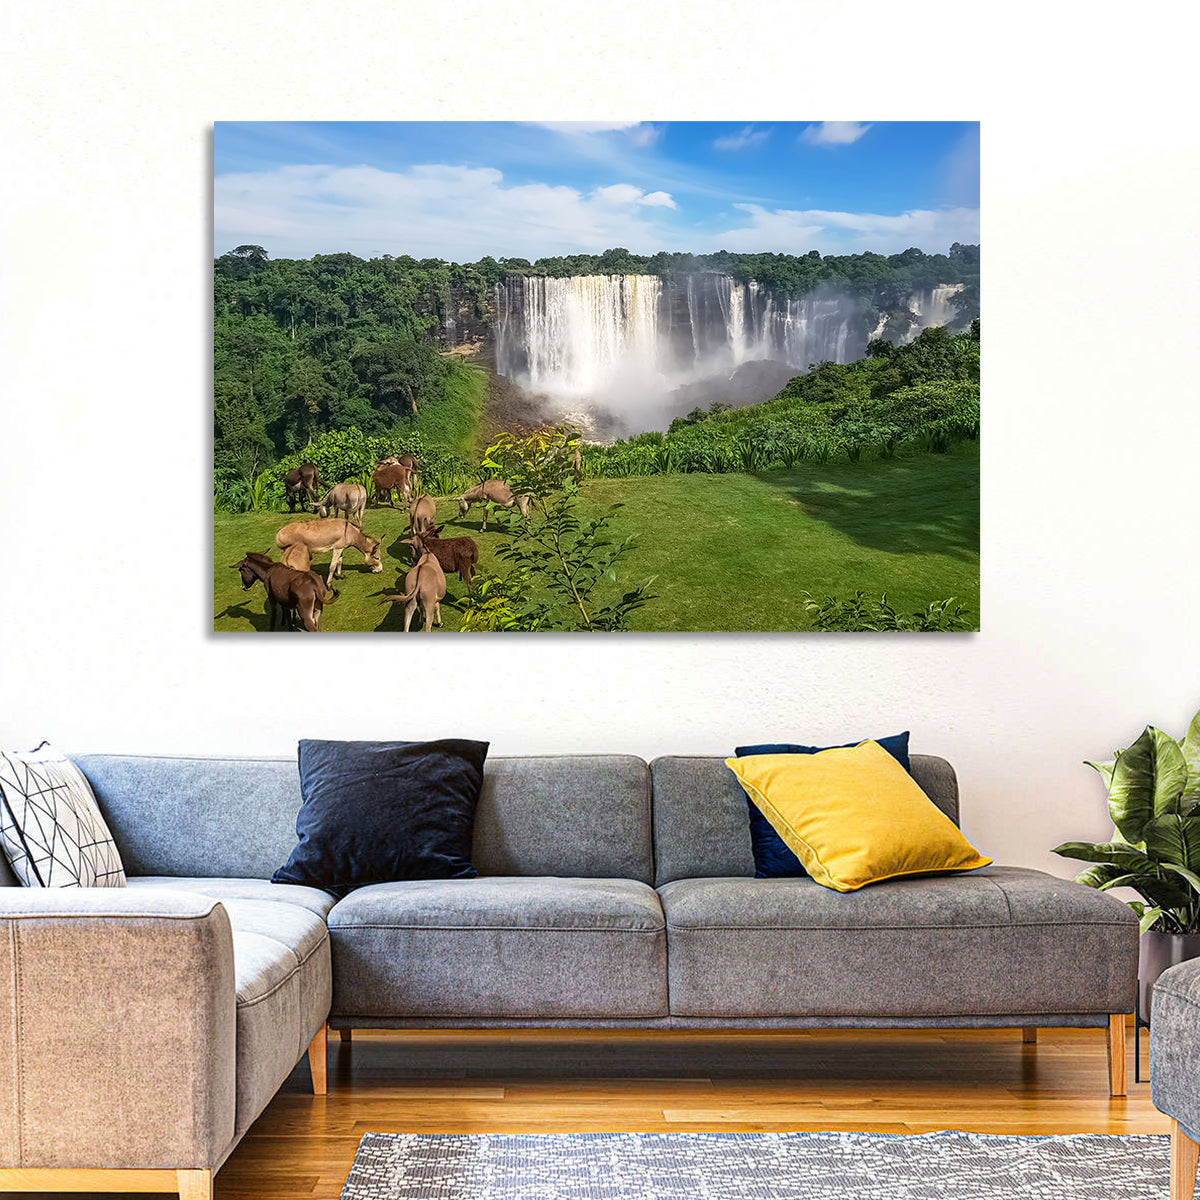 Kalandula Waterfalls Wall Art